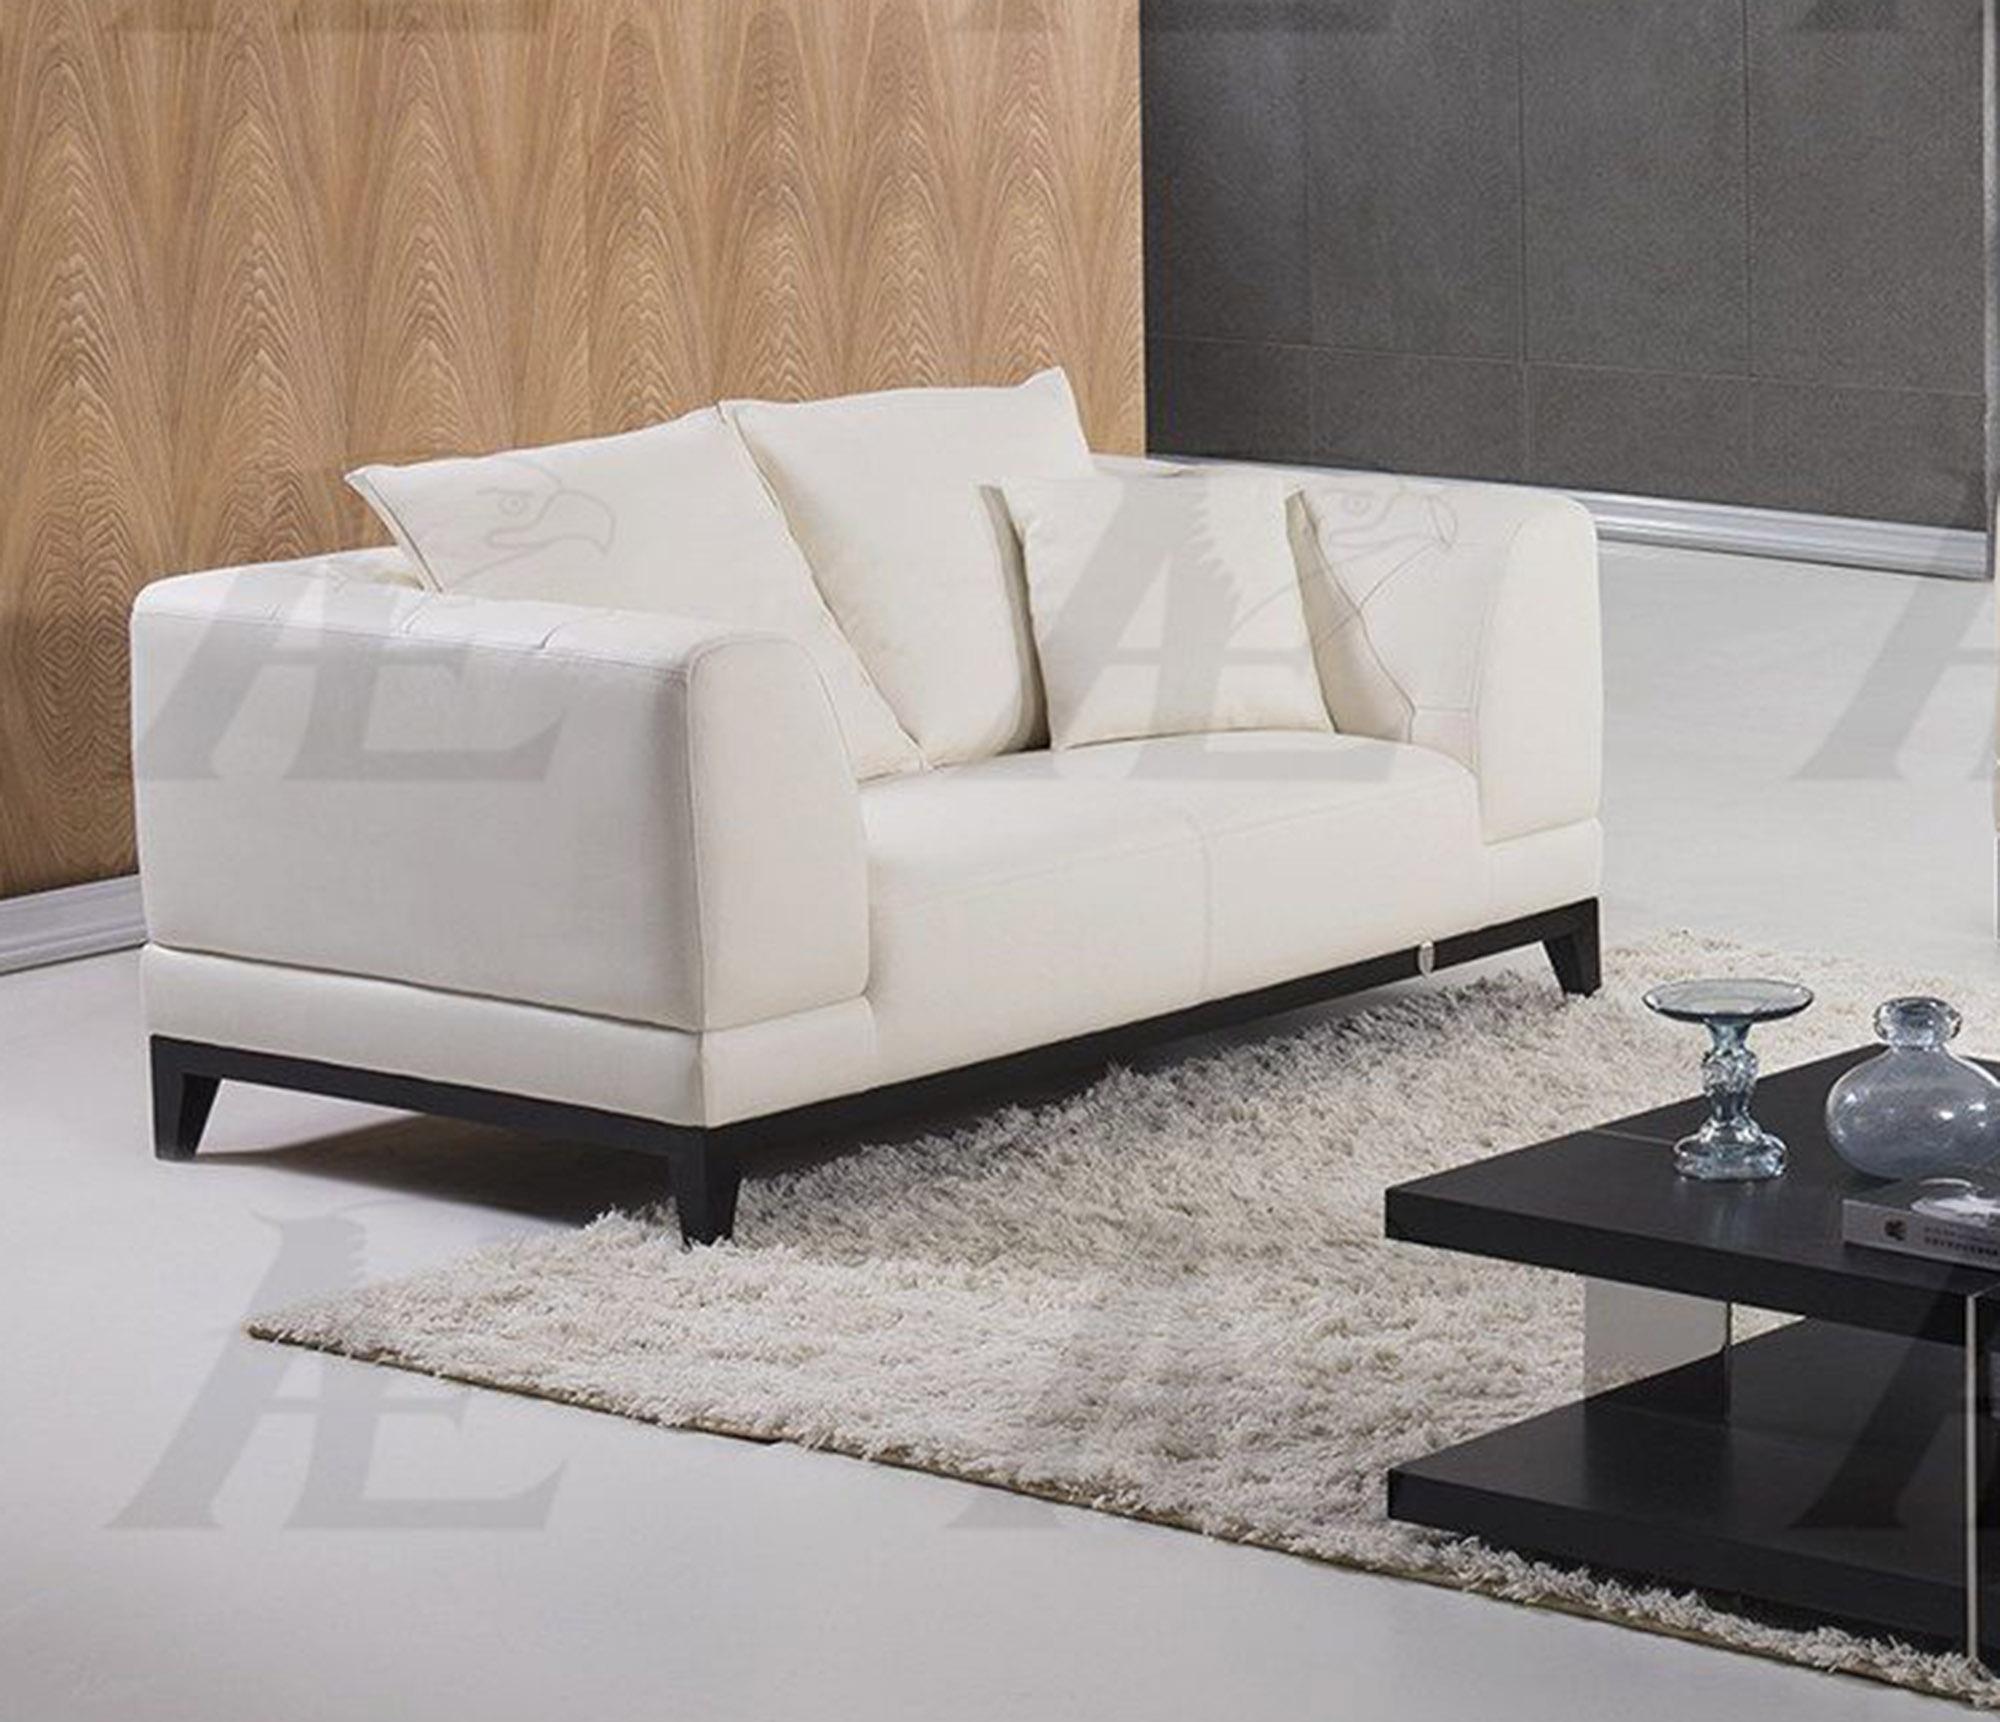 

    
American Eagle Furniture  EK065-W White Sofa  Italian Full Leather
